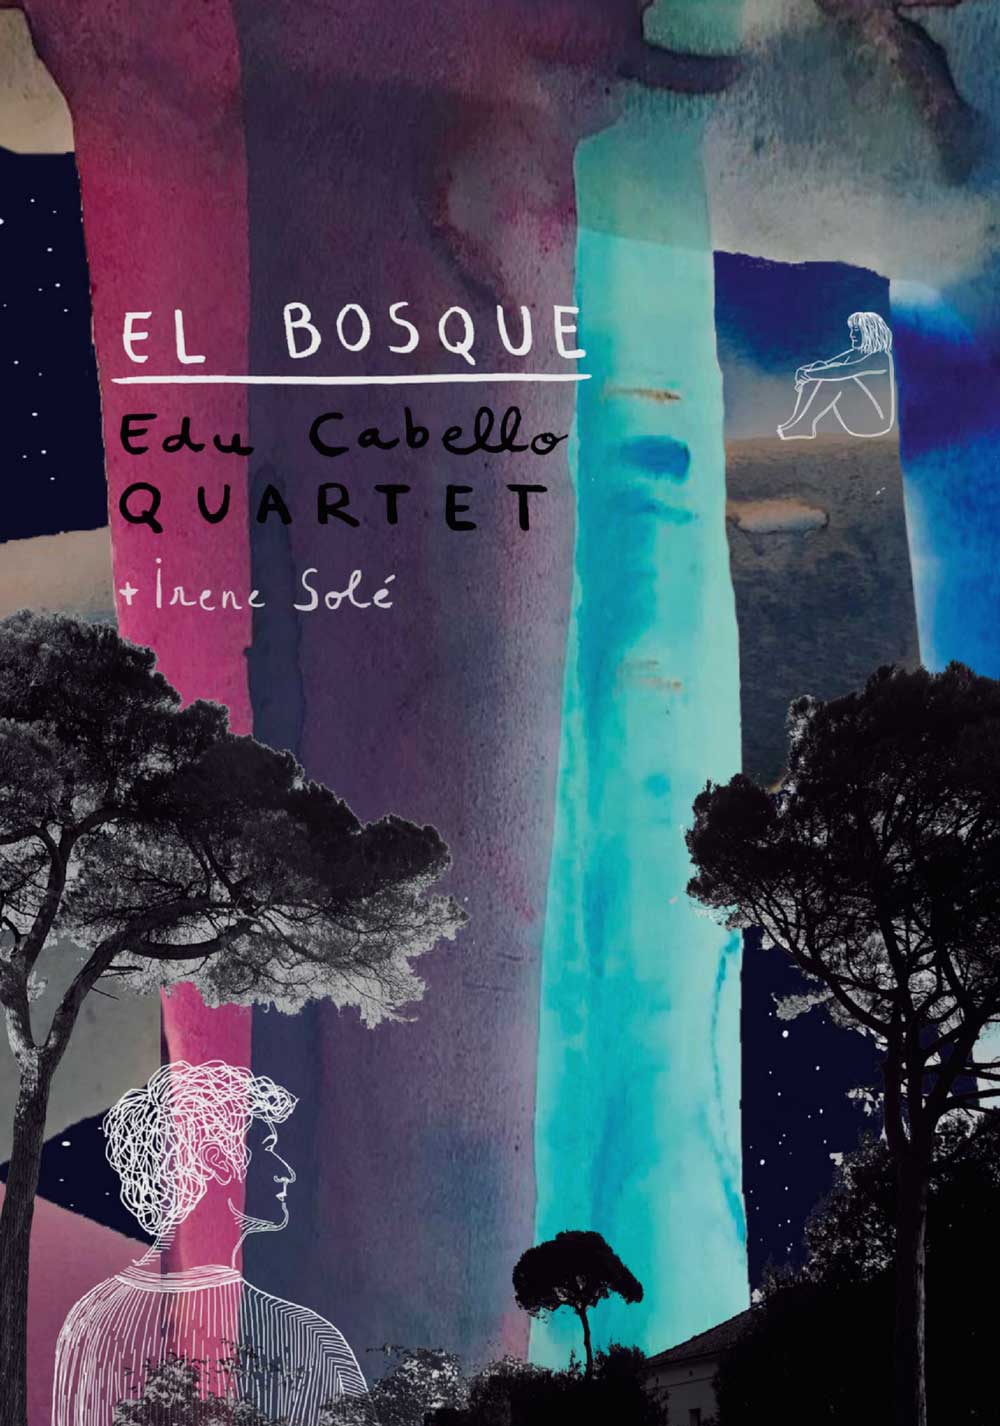 Edu Cabello Quartet El bosque